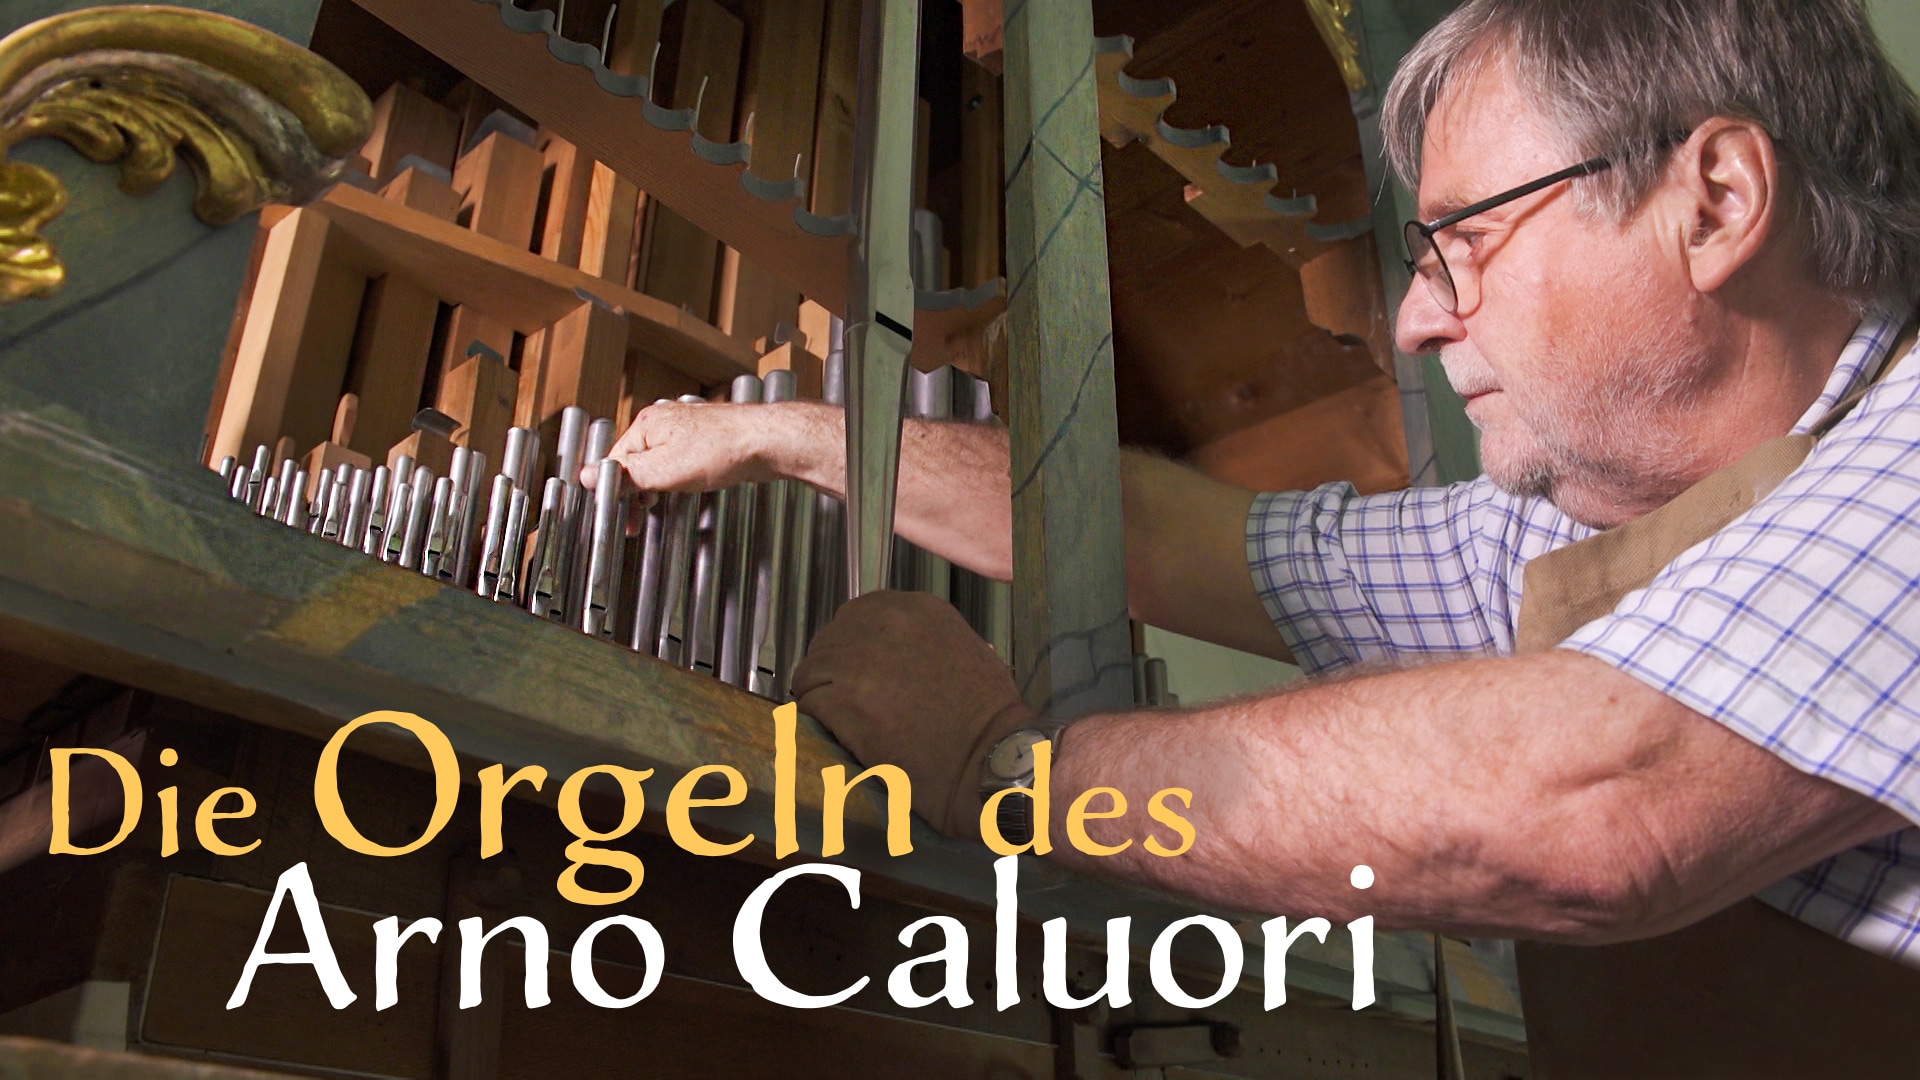 Arno Caluori und seine Orgeln